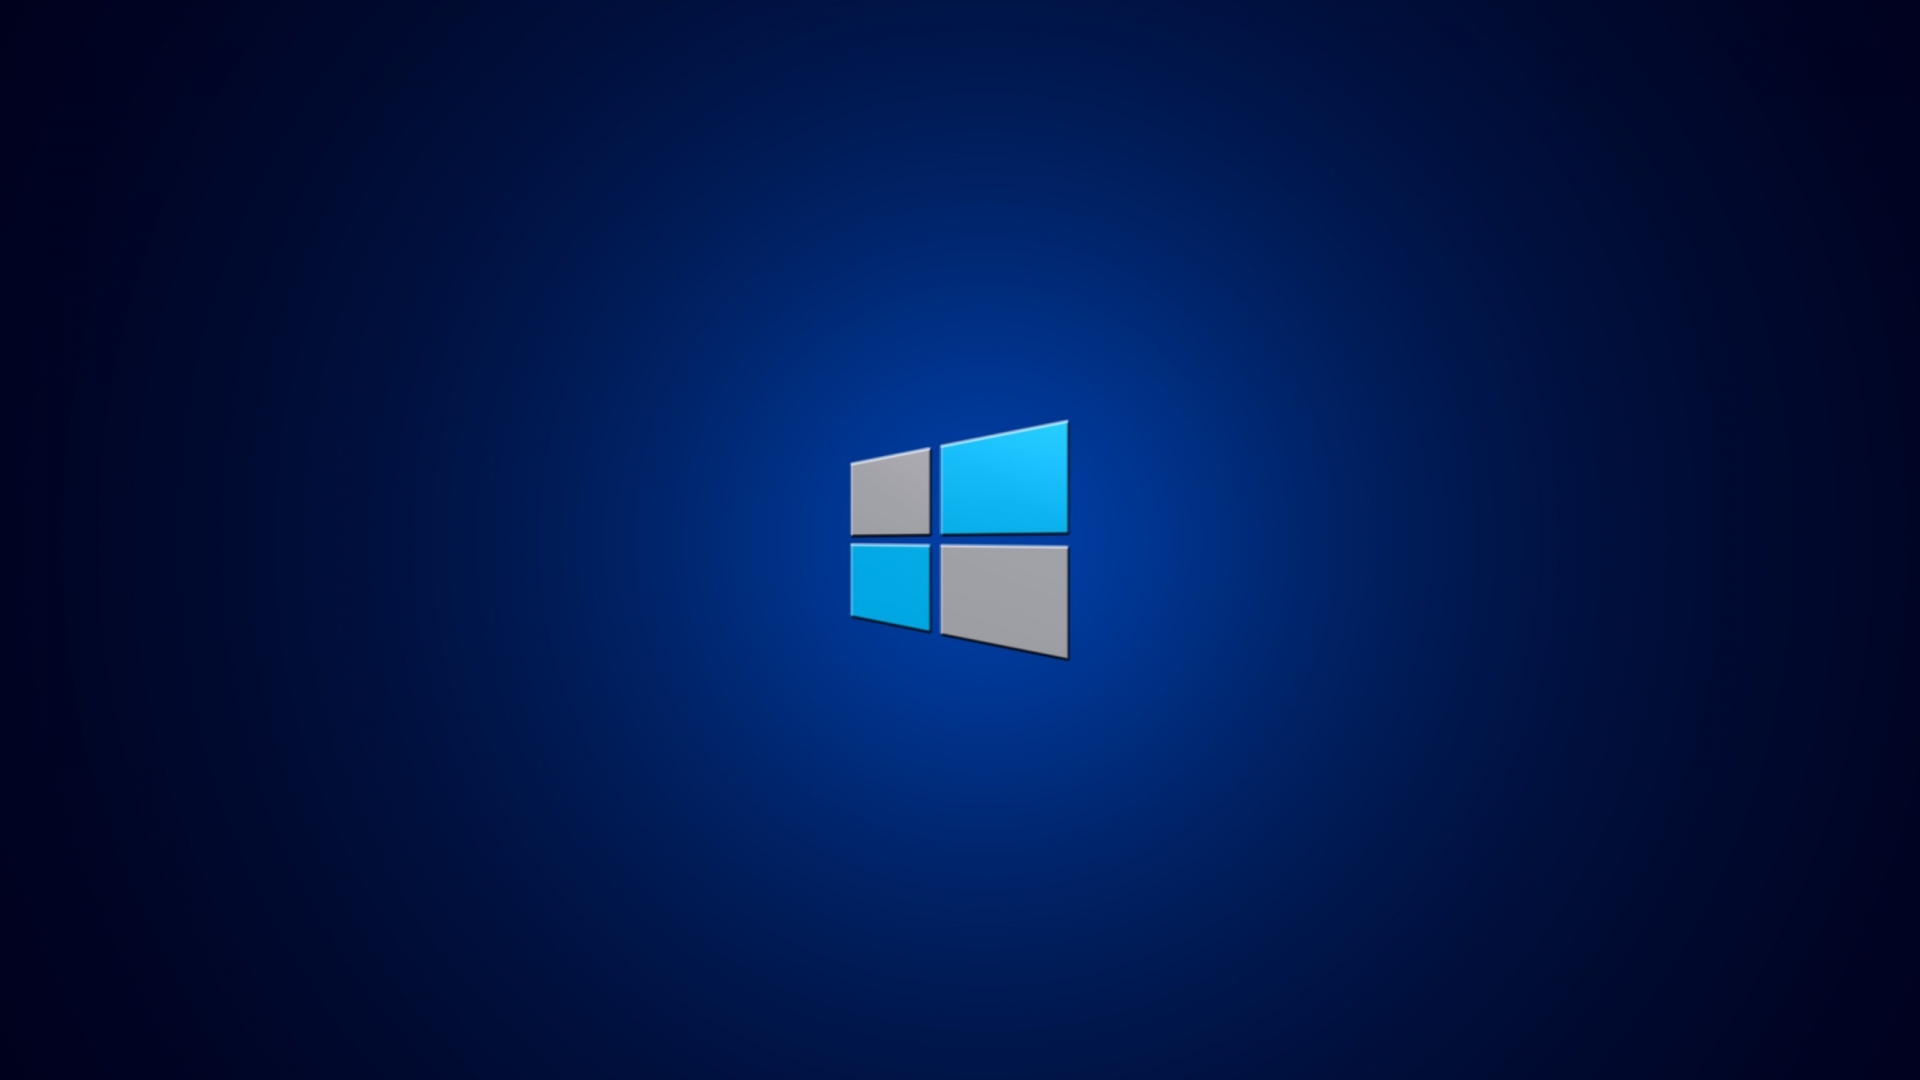 Tải Windows 8 nhanh nhất: Sẵn sàng trải nghiệm một hệ điều hành tuyệt vời và hoàn toàn mới với Windows 8? Với link download Windows 8 nhanh nhất, bạn sẽ có thể cài đặt và trải nghiệm Windows 8 ngay lập tức, đồng thời tiết kiệm thời gian và công sức.